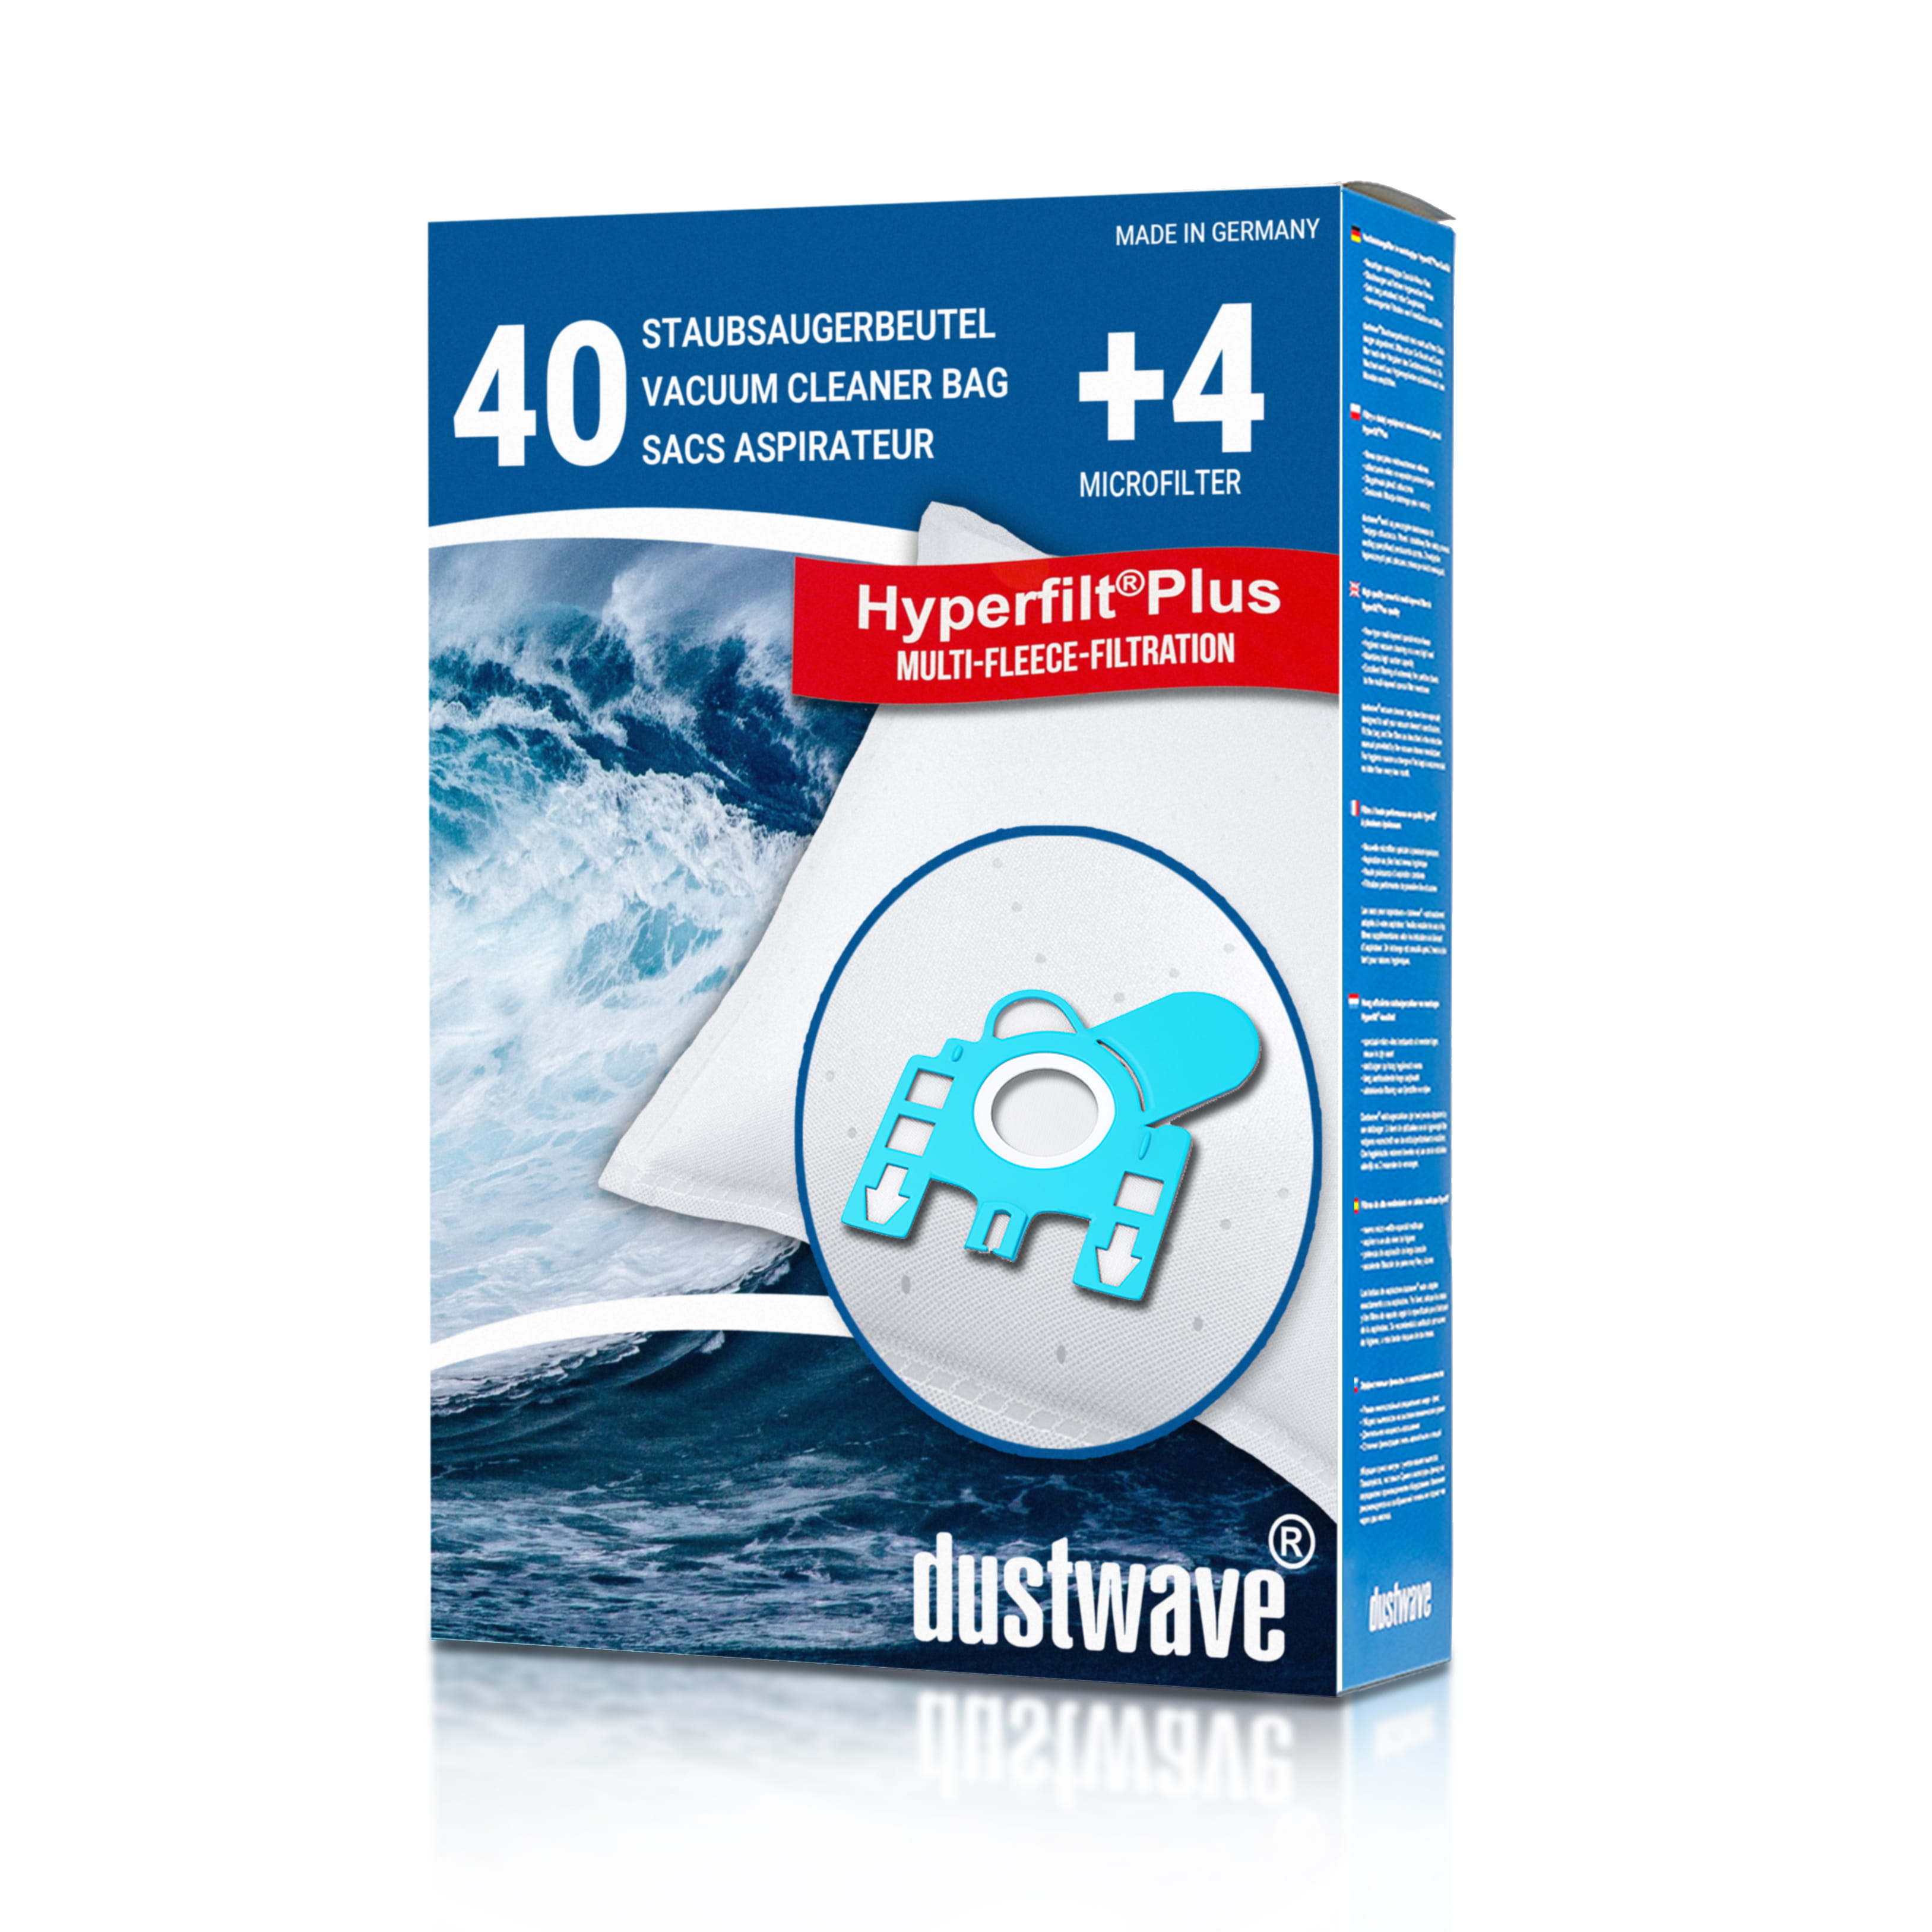 Dustwave® 40 Staubsaugerbeutel für Hoover 39000247 - hocheffizient, mehrlagiges Mikrovlies mit Hygieneverschluss - Made in Germany